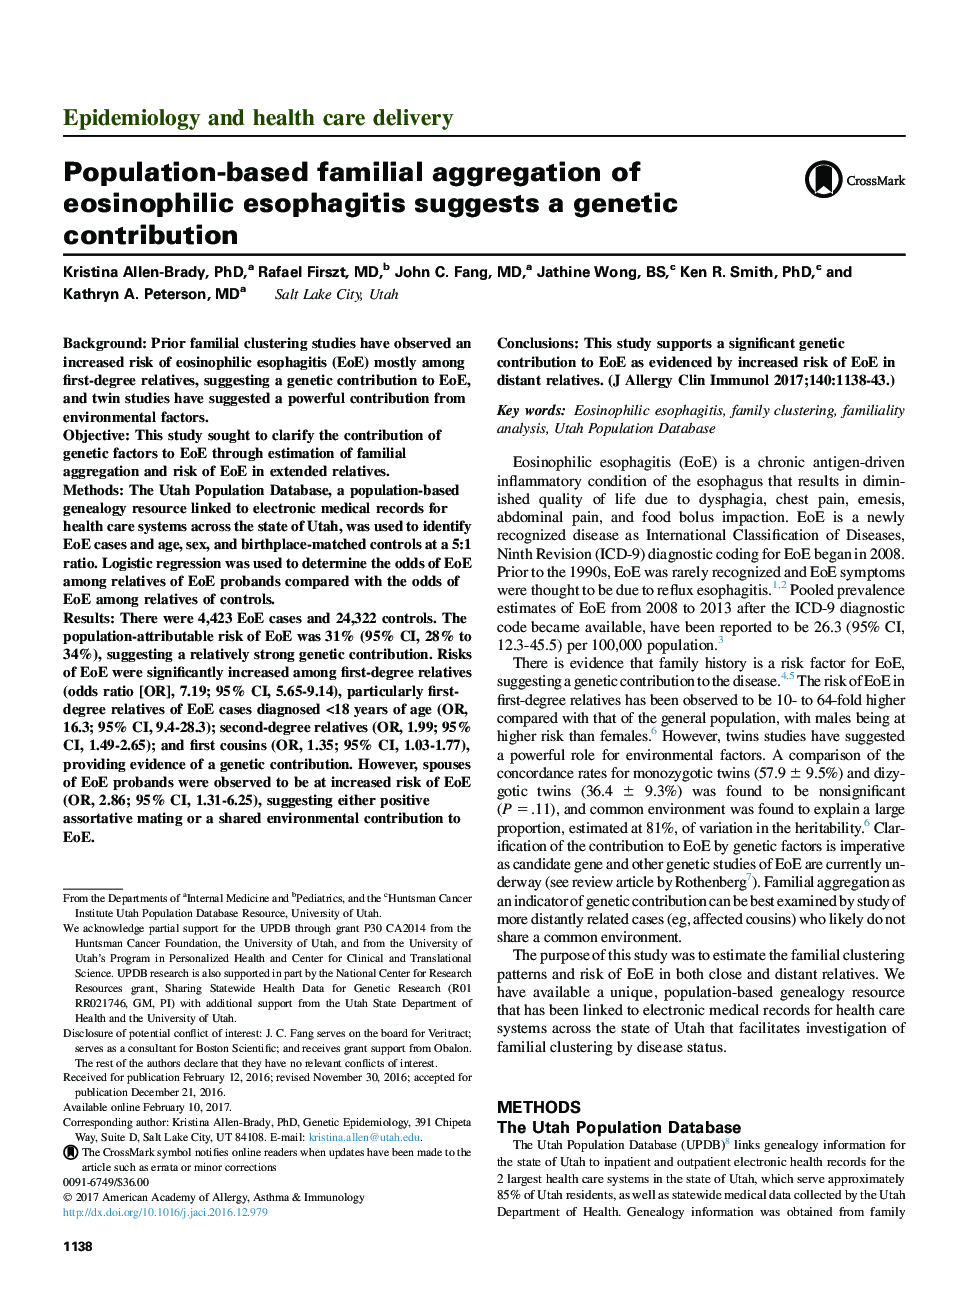 تجمع خانوادگی مبتلا به یوزافاگیت ائوزینوفیلیک مبتنی بر جمعیت، سهم ژنتیکی را نشان می دهد 